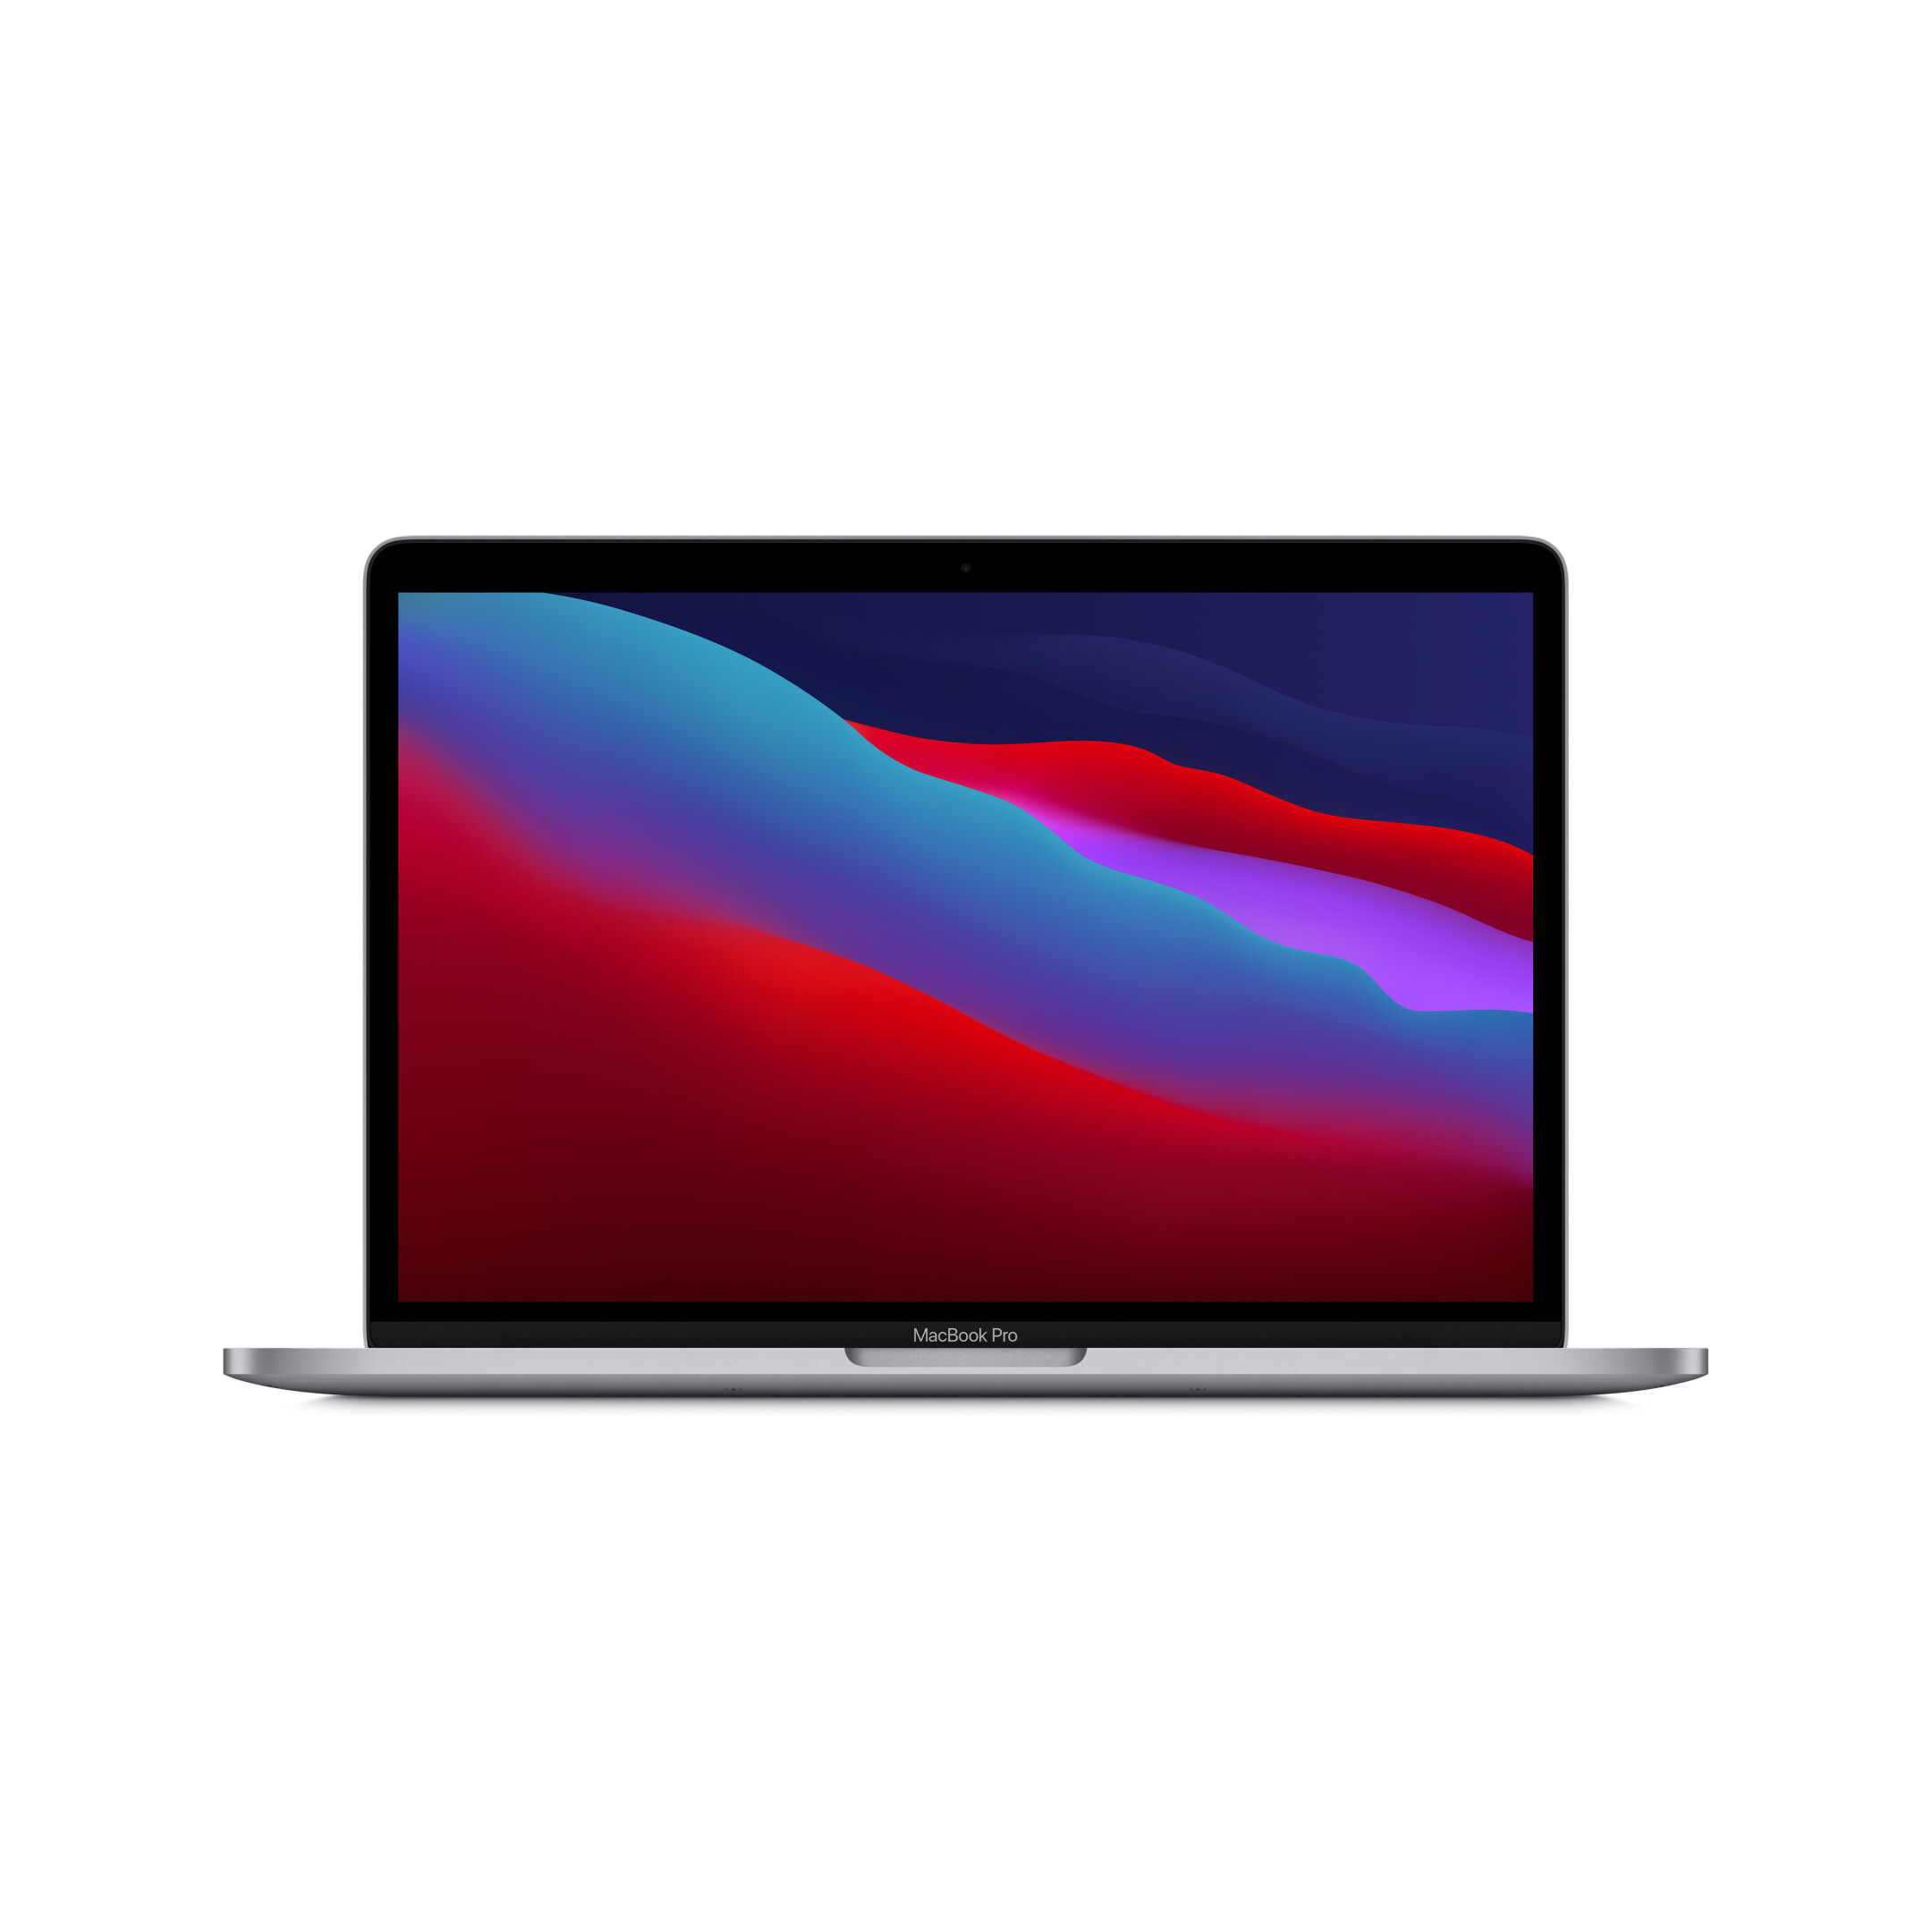 Apple-Macbook-Pro-13-3-M1-8-Core-CPU-256GB-Space-Grau